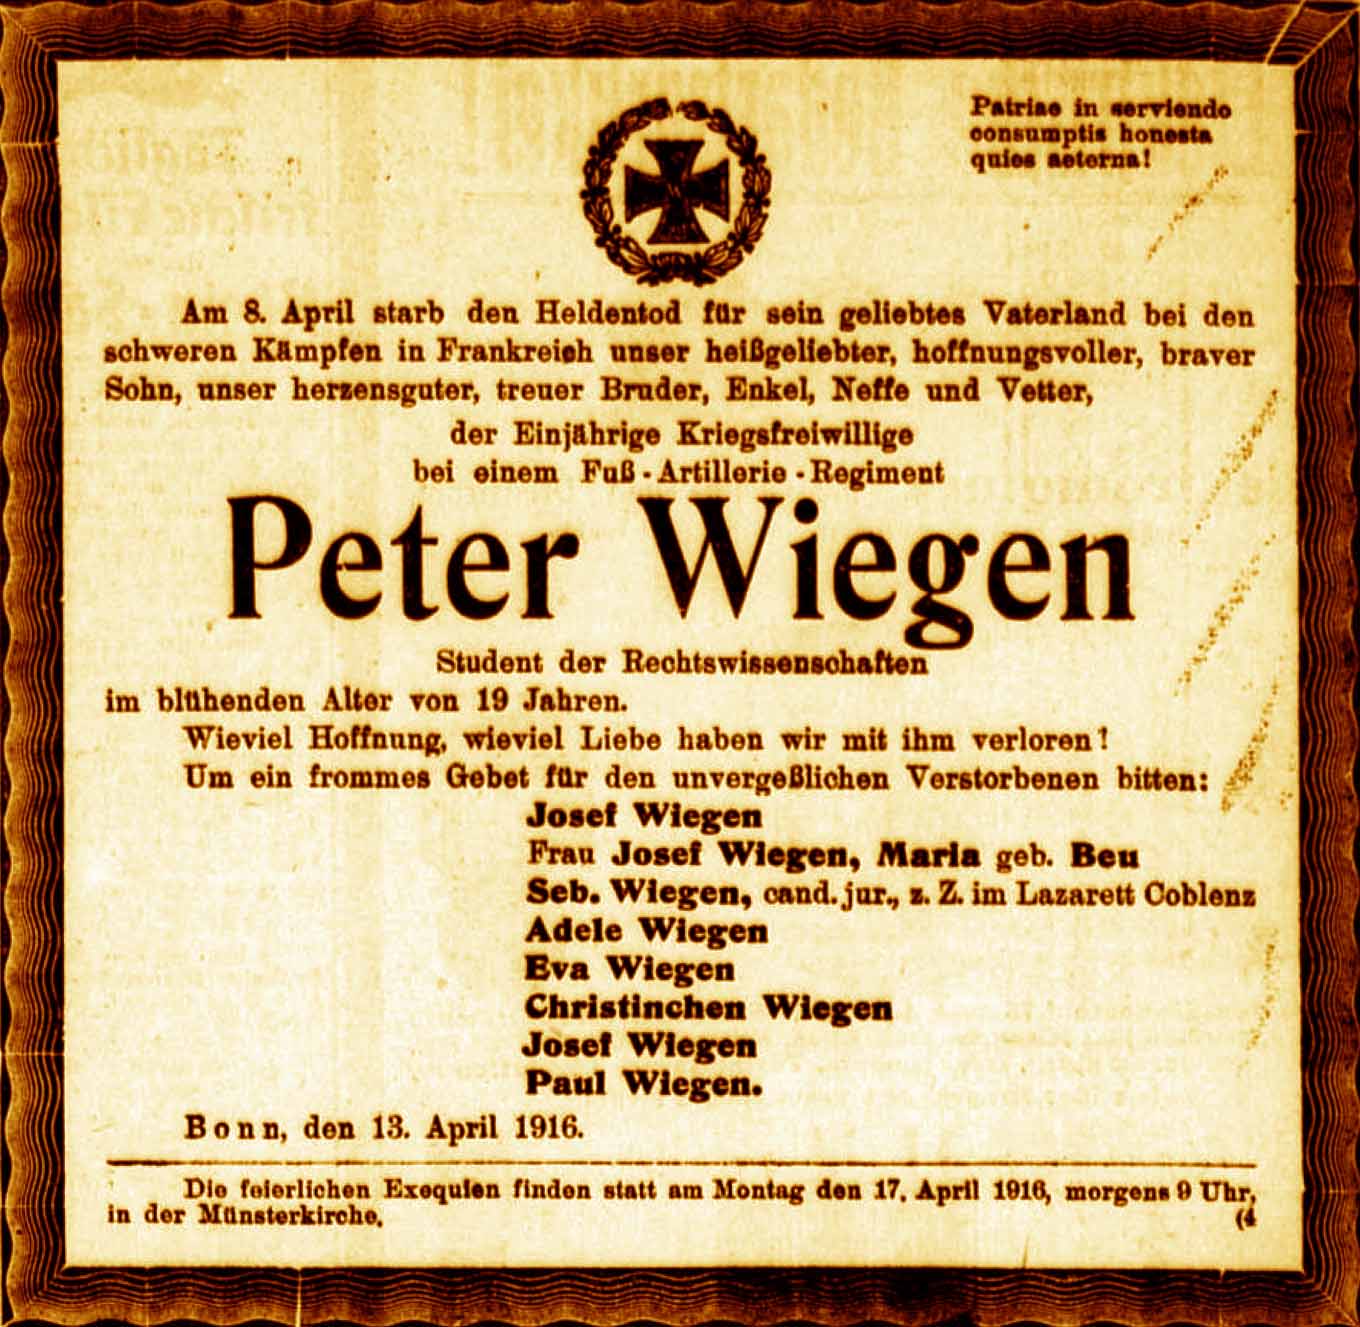 Anzeige im General-Anzeiger vom 13. April 1916